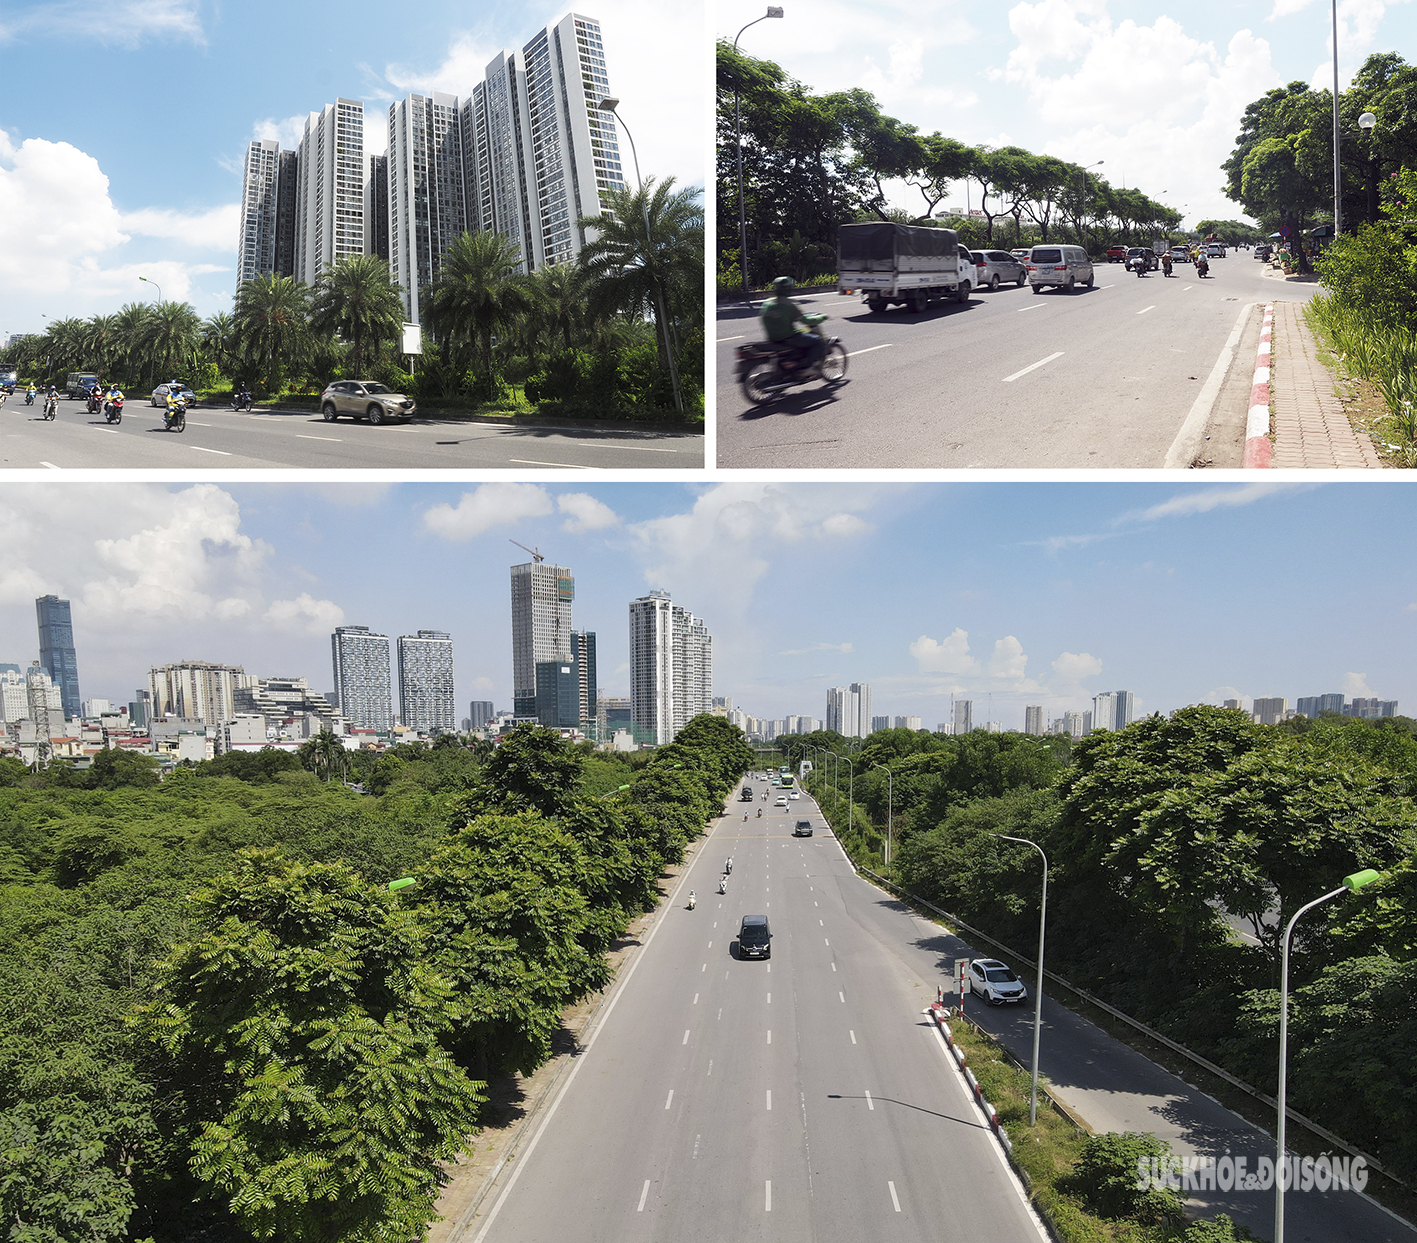 Đại lộ hiện đại nhất Việt Nam nhìn từ trên cao như một khu 'rừng tái sinh' - Ảnh 11.